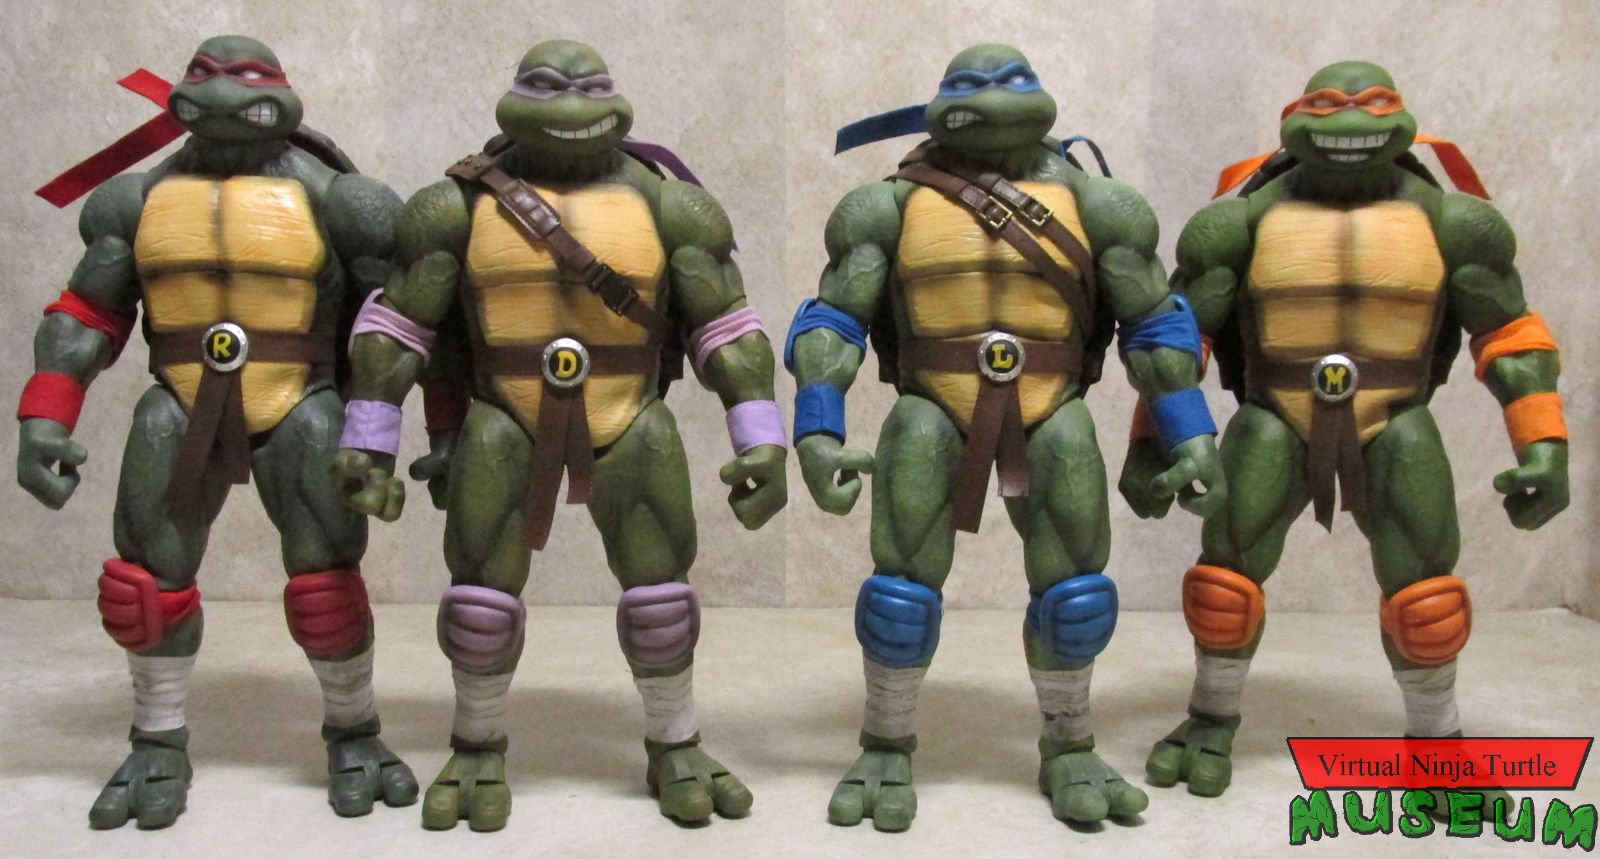 DreamEx Ninja Turtles